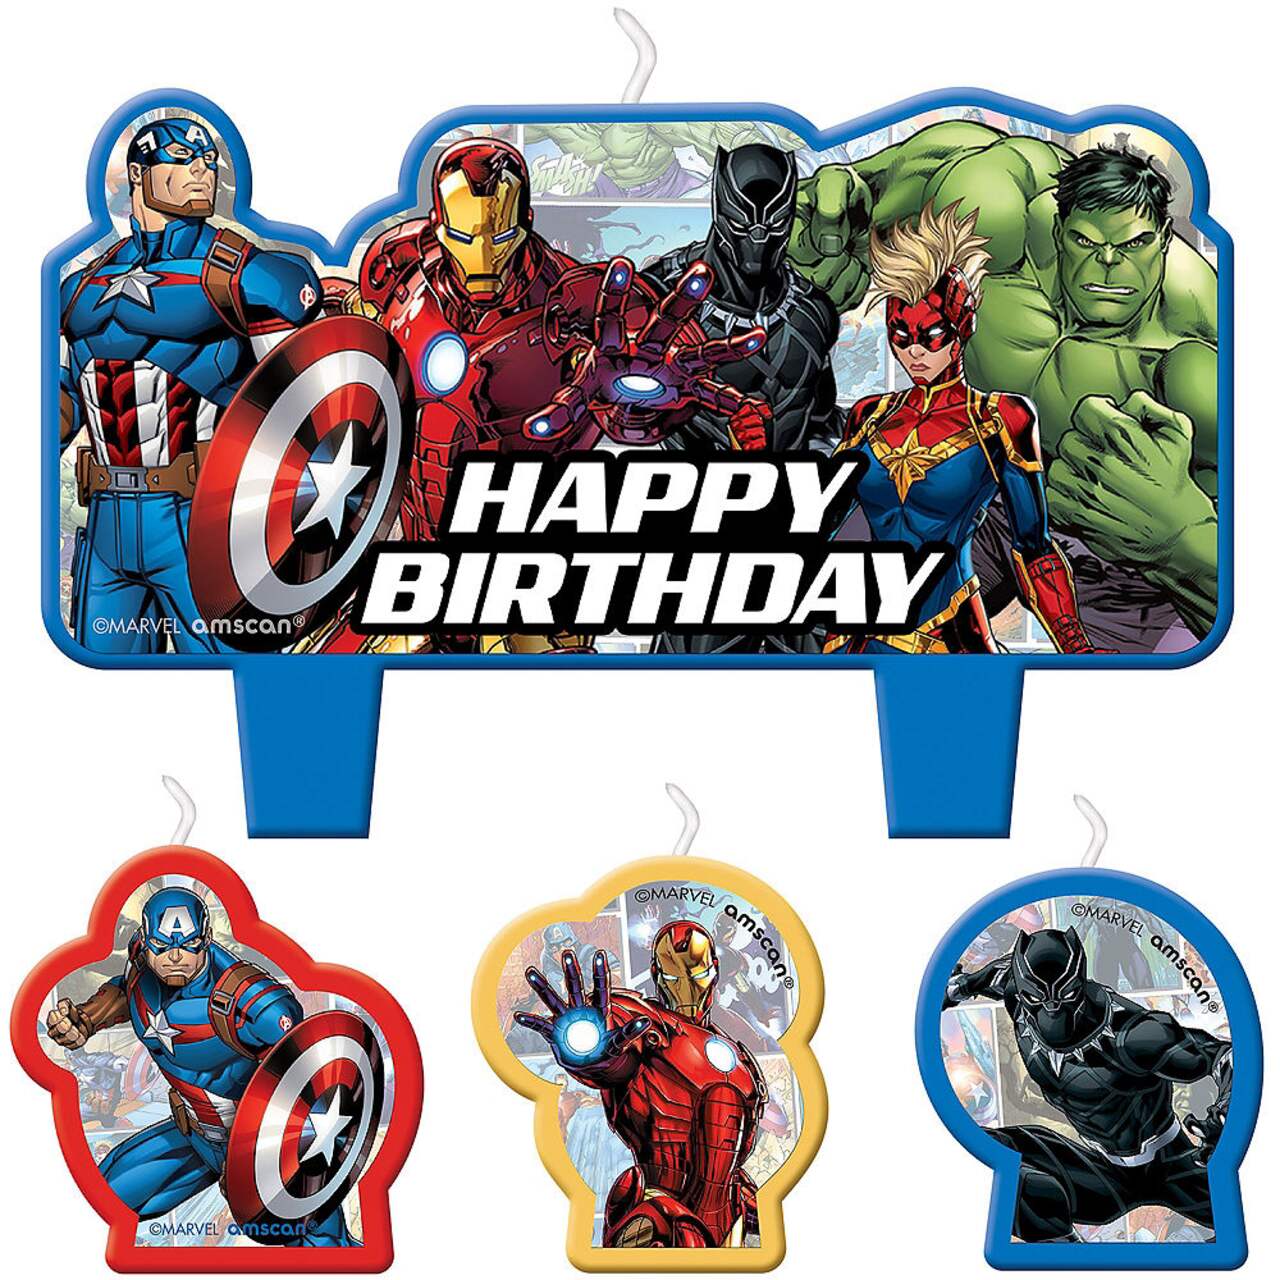 Gâteau anniversaire Avengers : bougie + chiffres + figurine